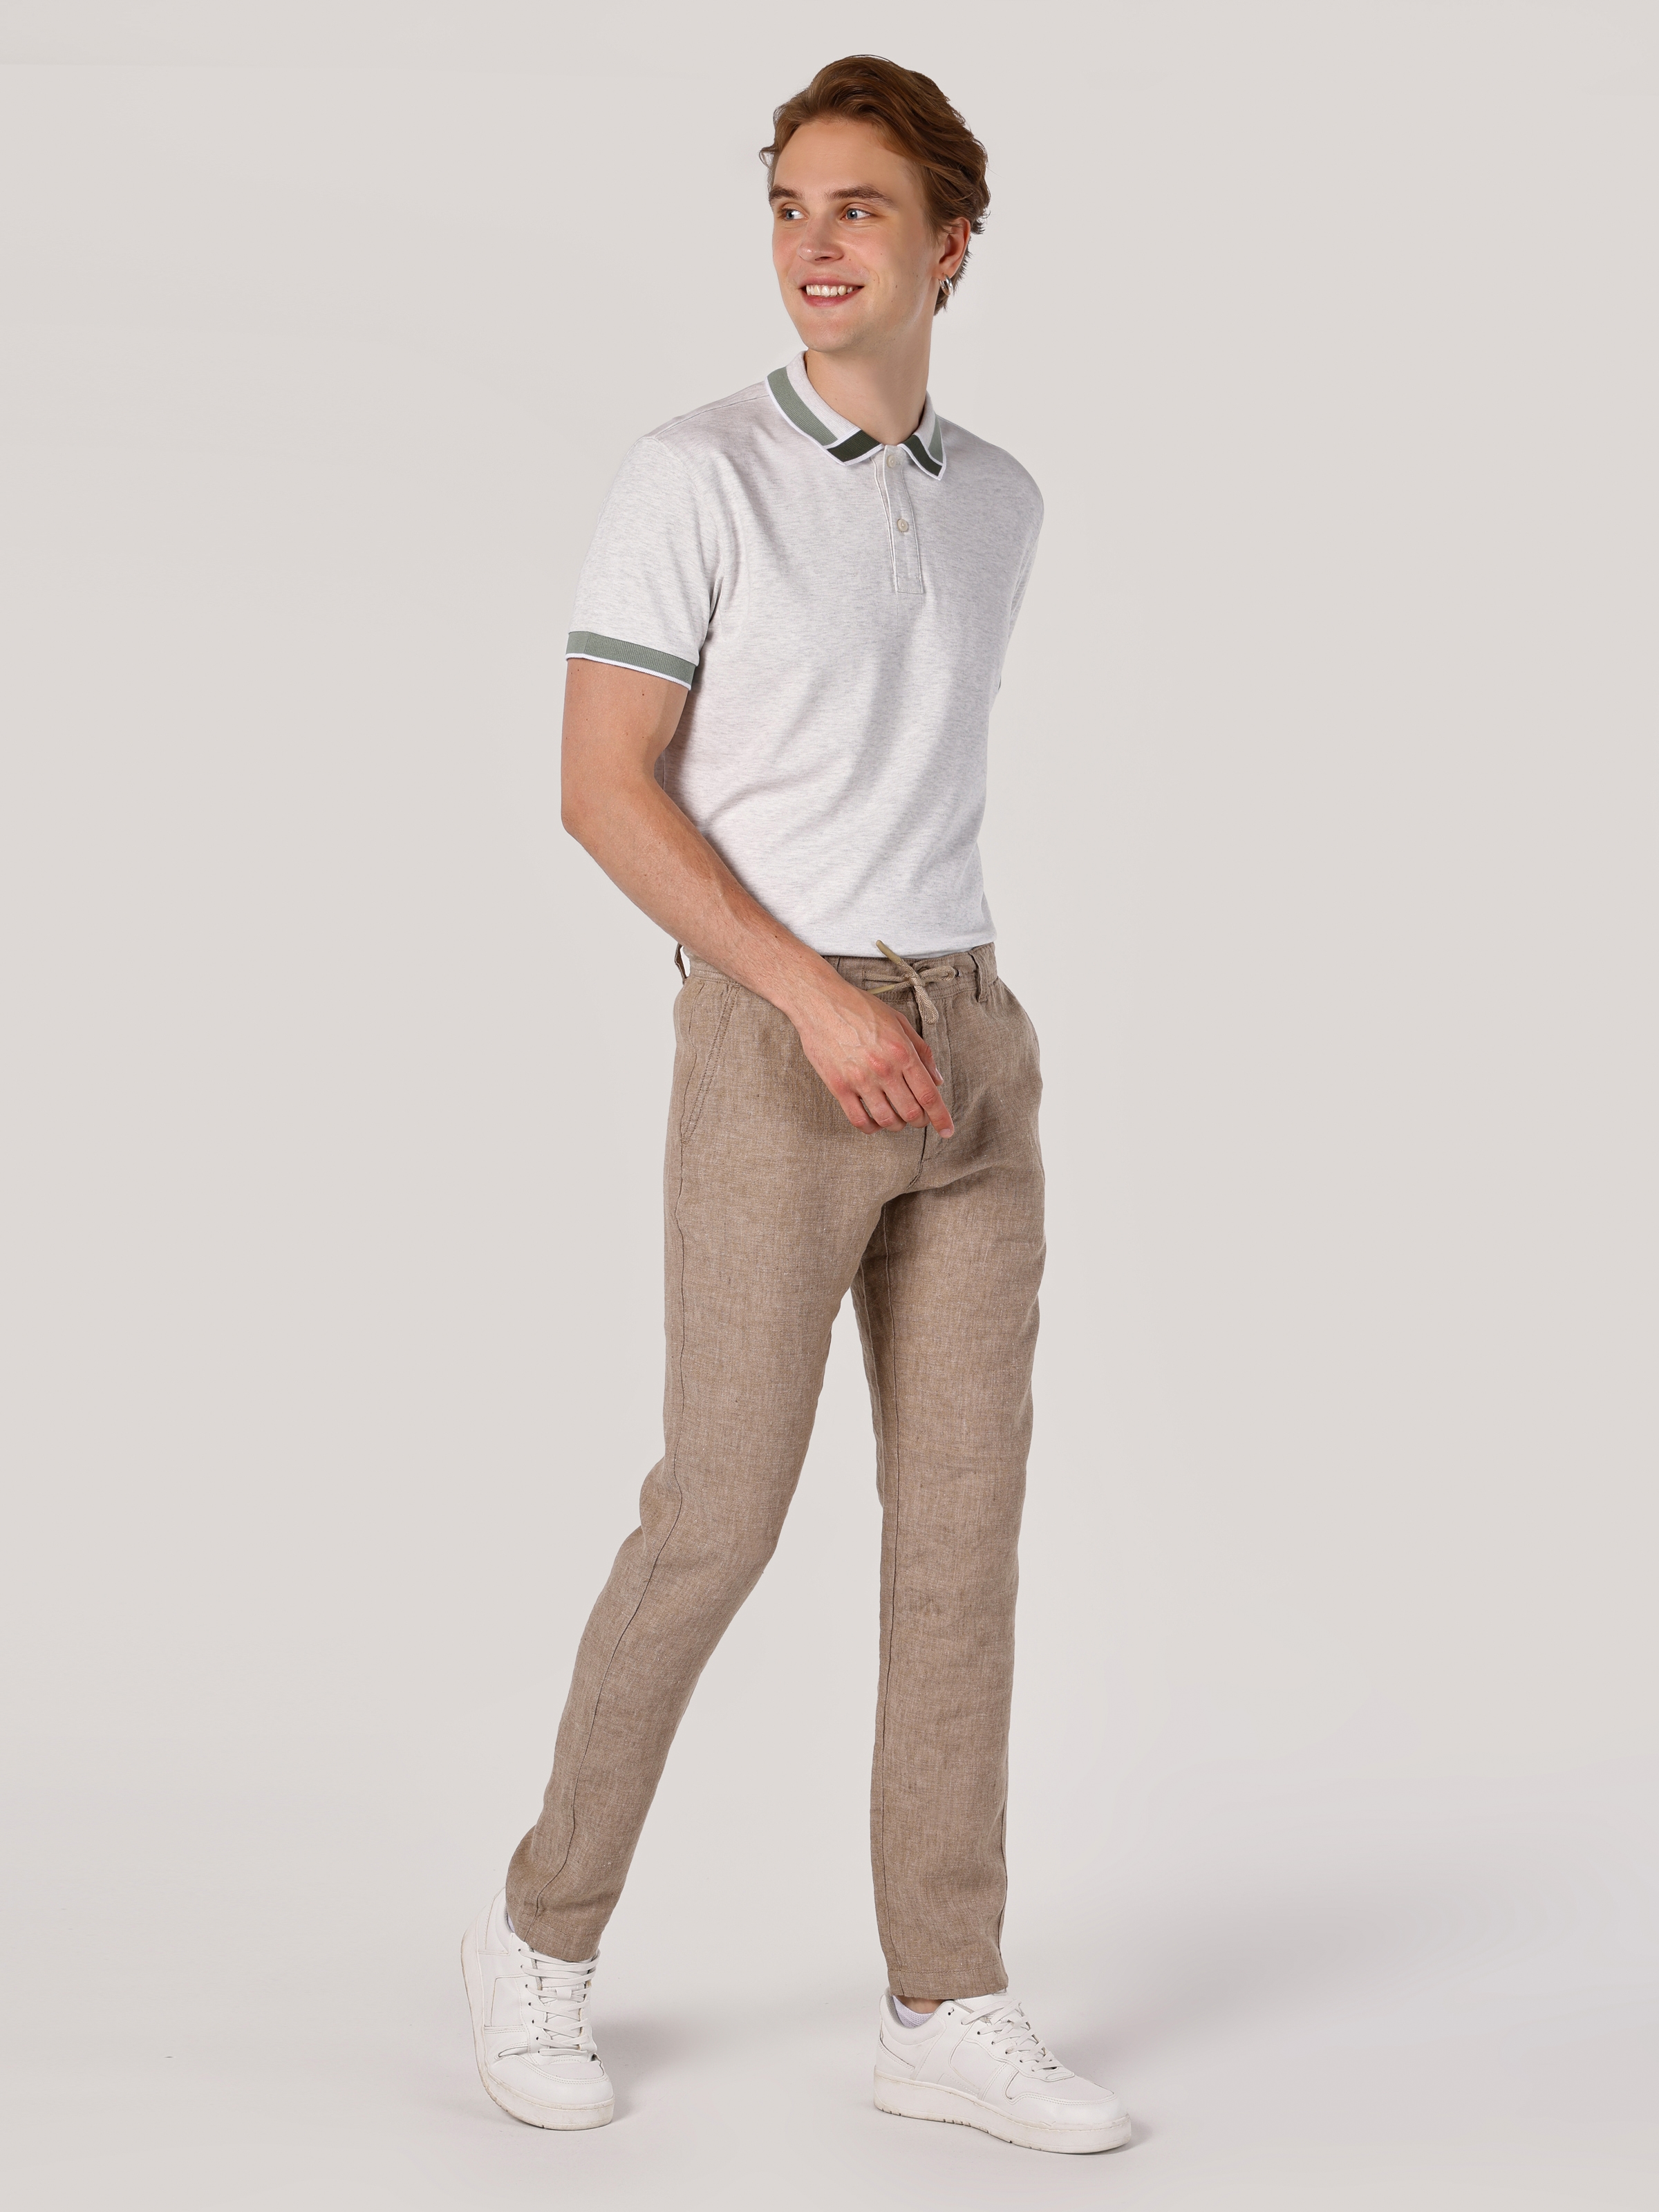 Afficher les détails de Pantalon Homme Marron Coupe Regular Taille Moyenne Jambe Droite